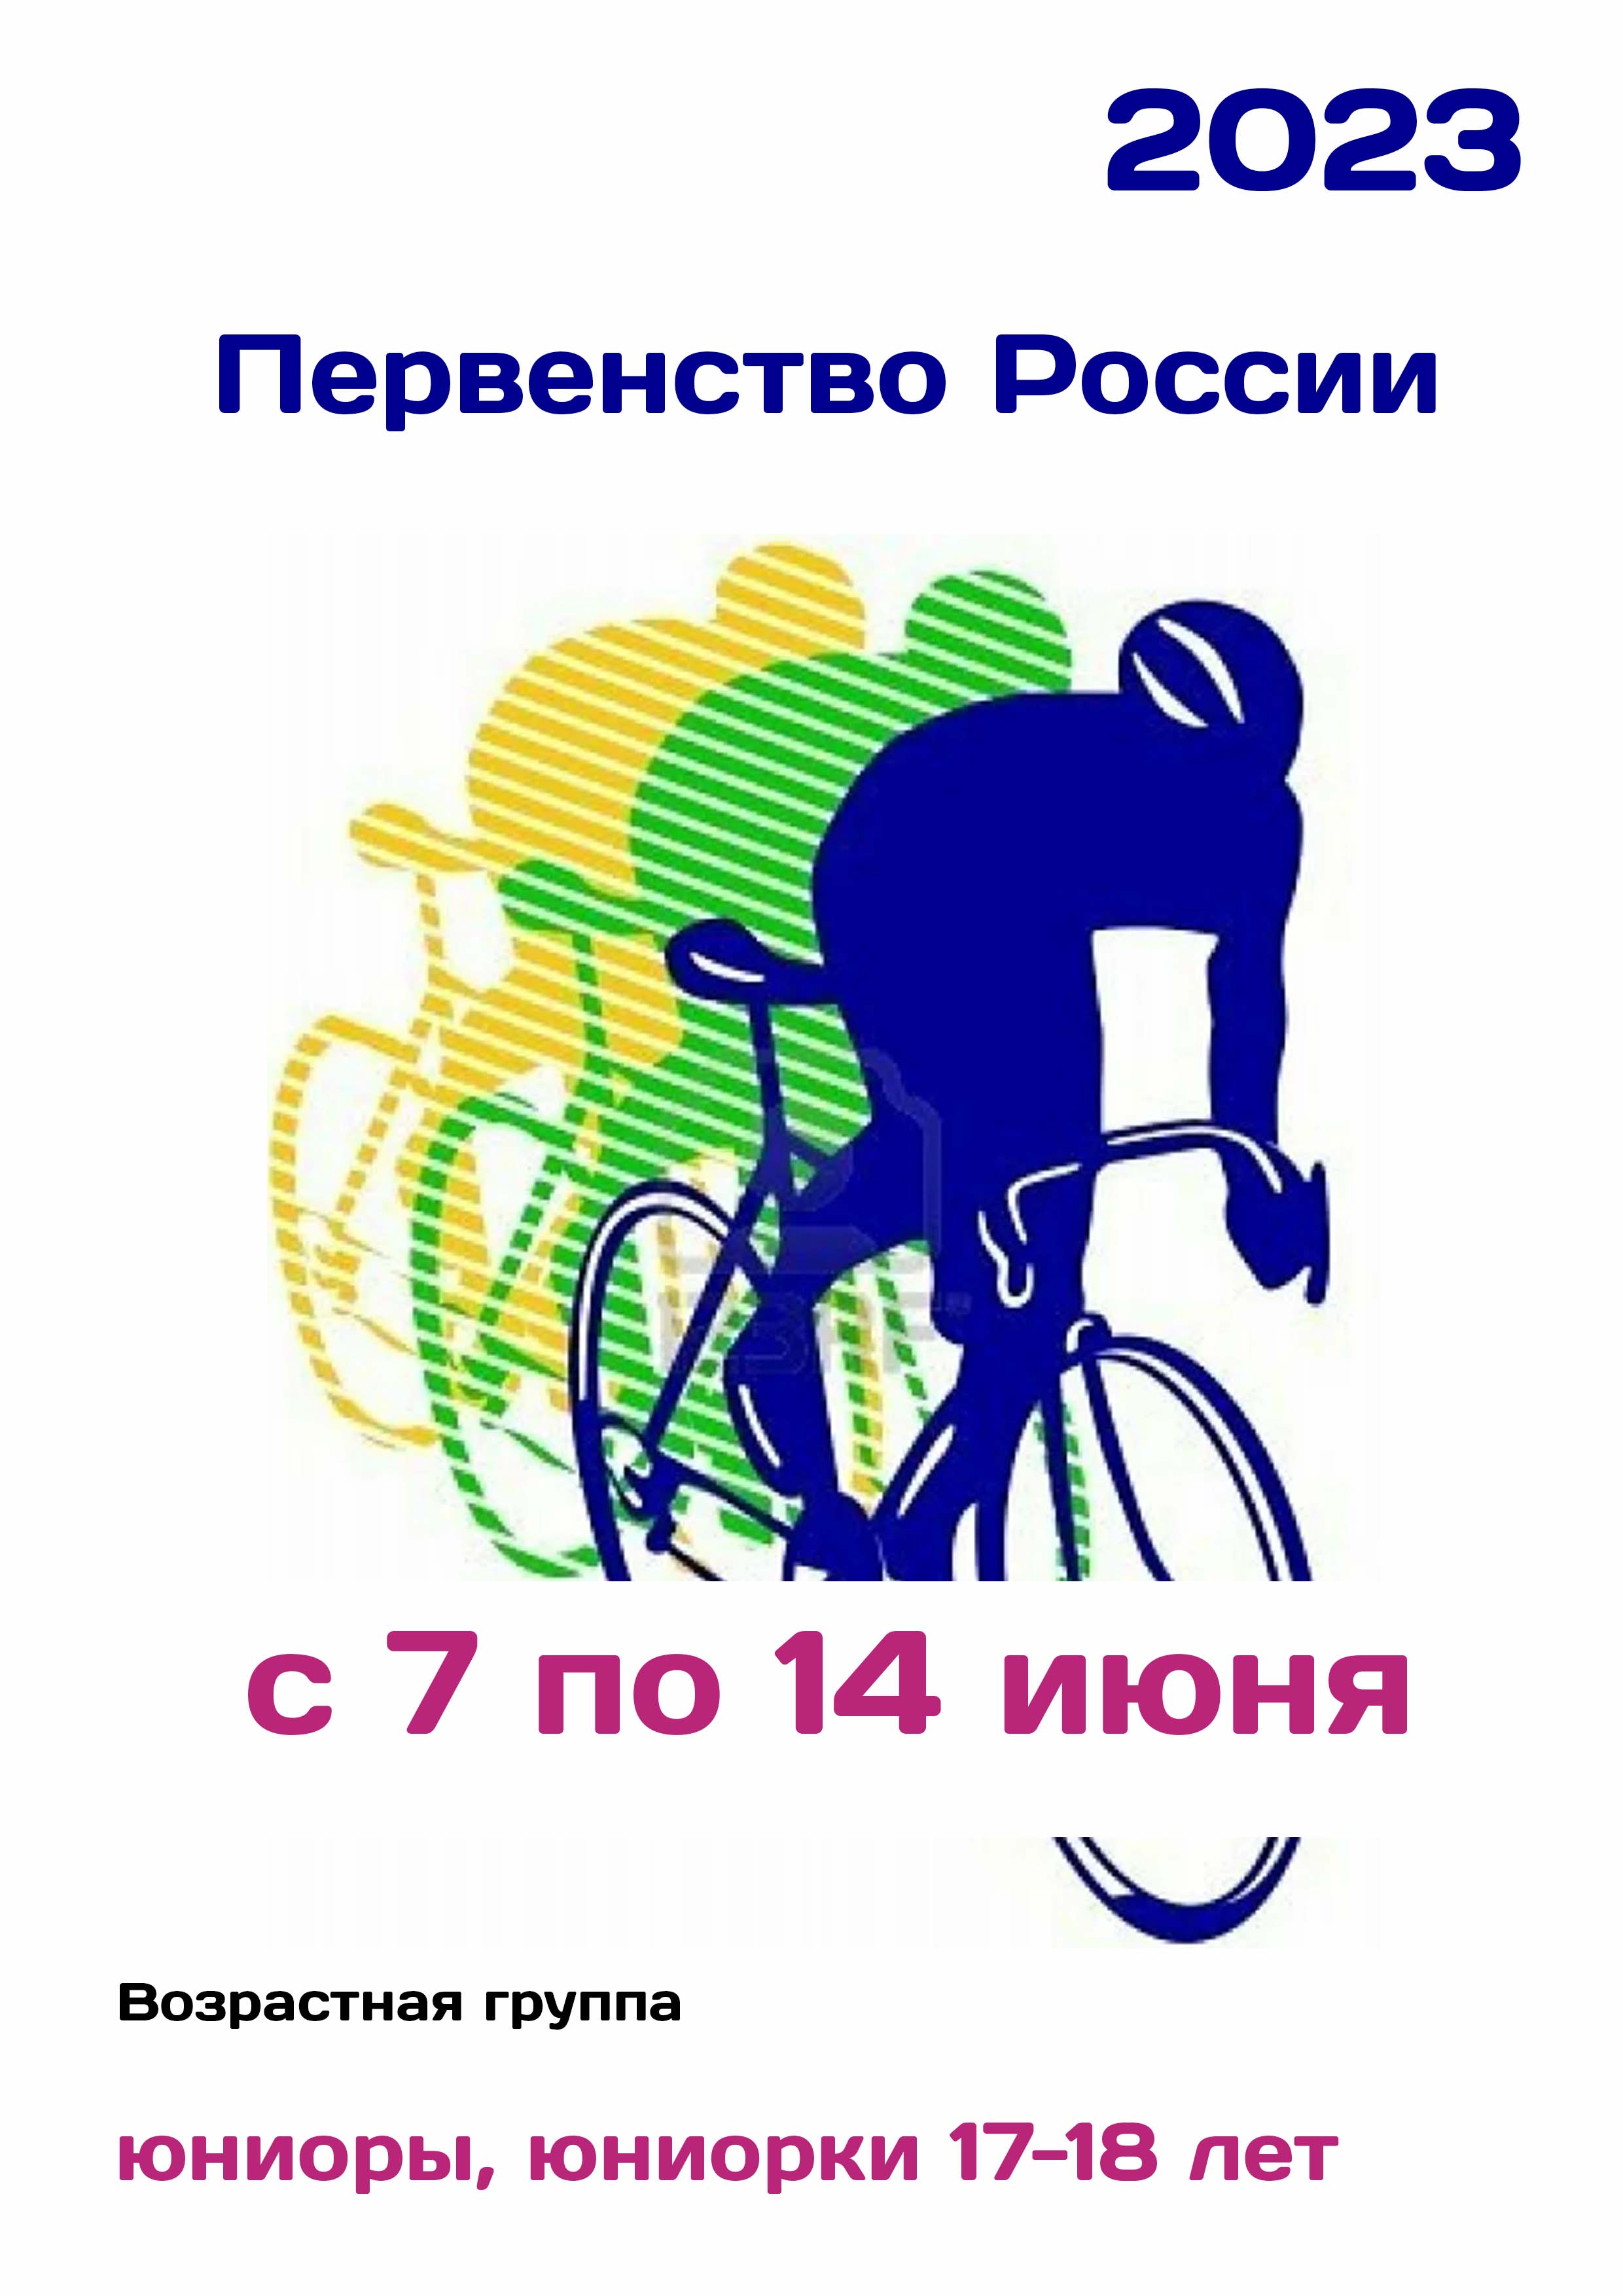 Первенство России по велоспорту 7  Juni
 2023  året
 